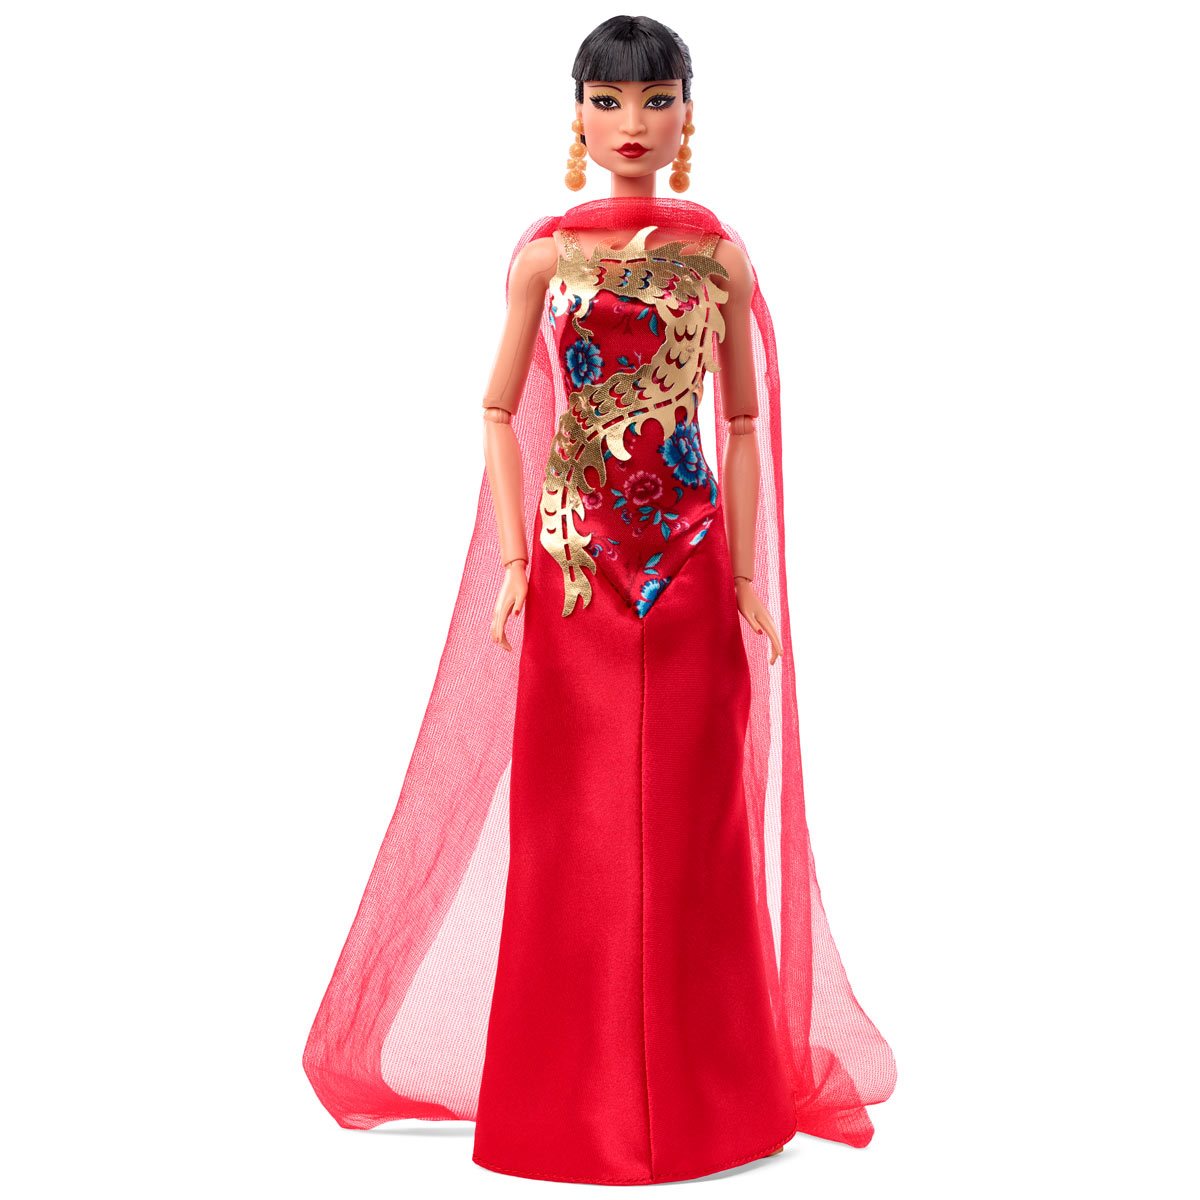 Desillusie Reserve Echter Barbie Inspiring Women Anna May Wong Doll